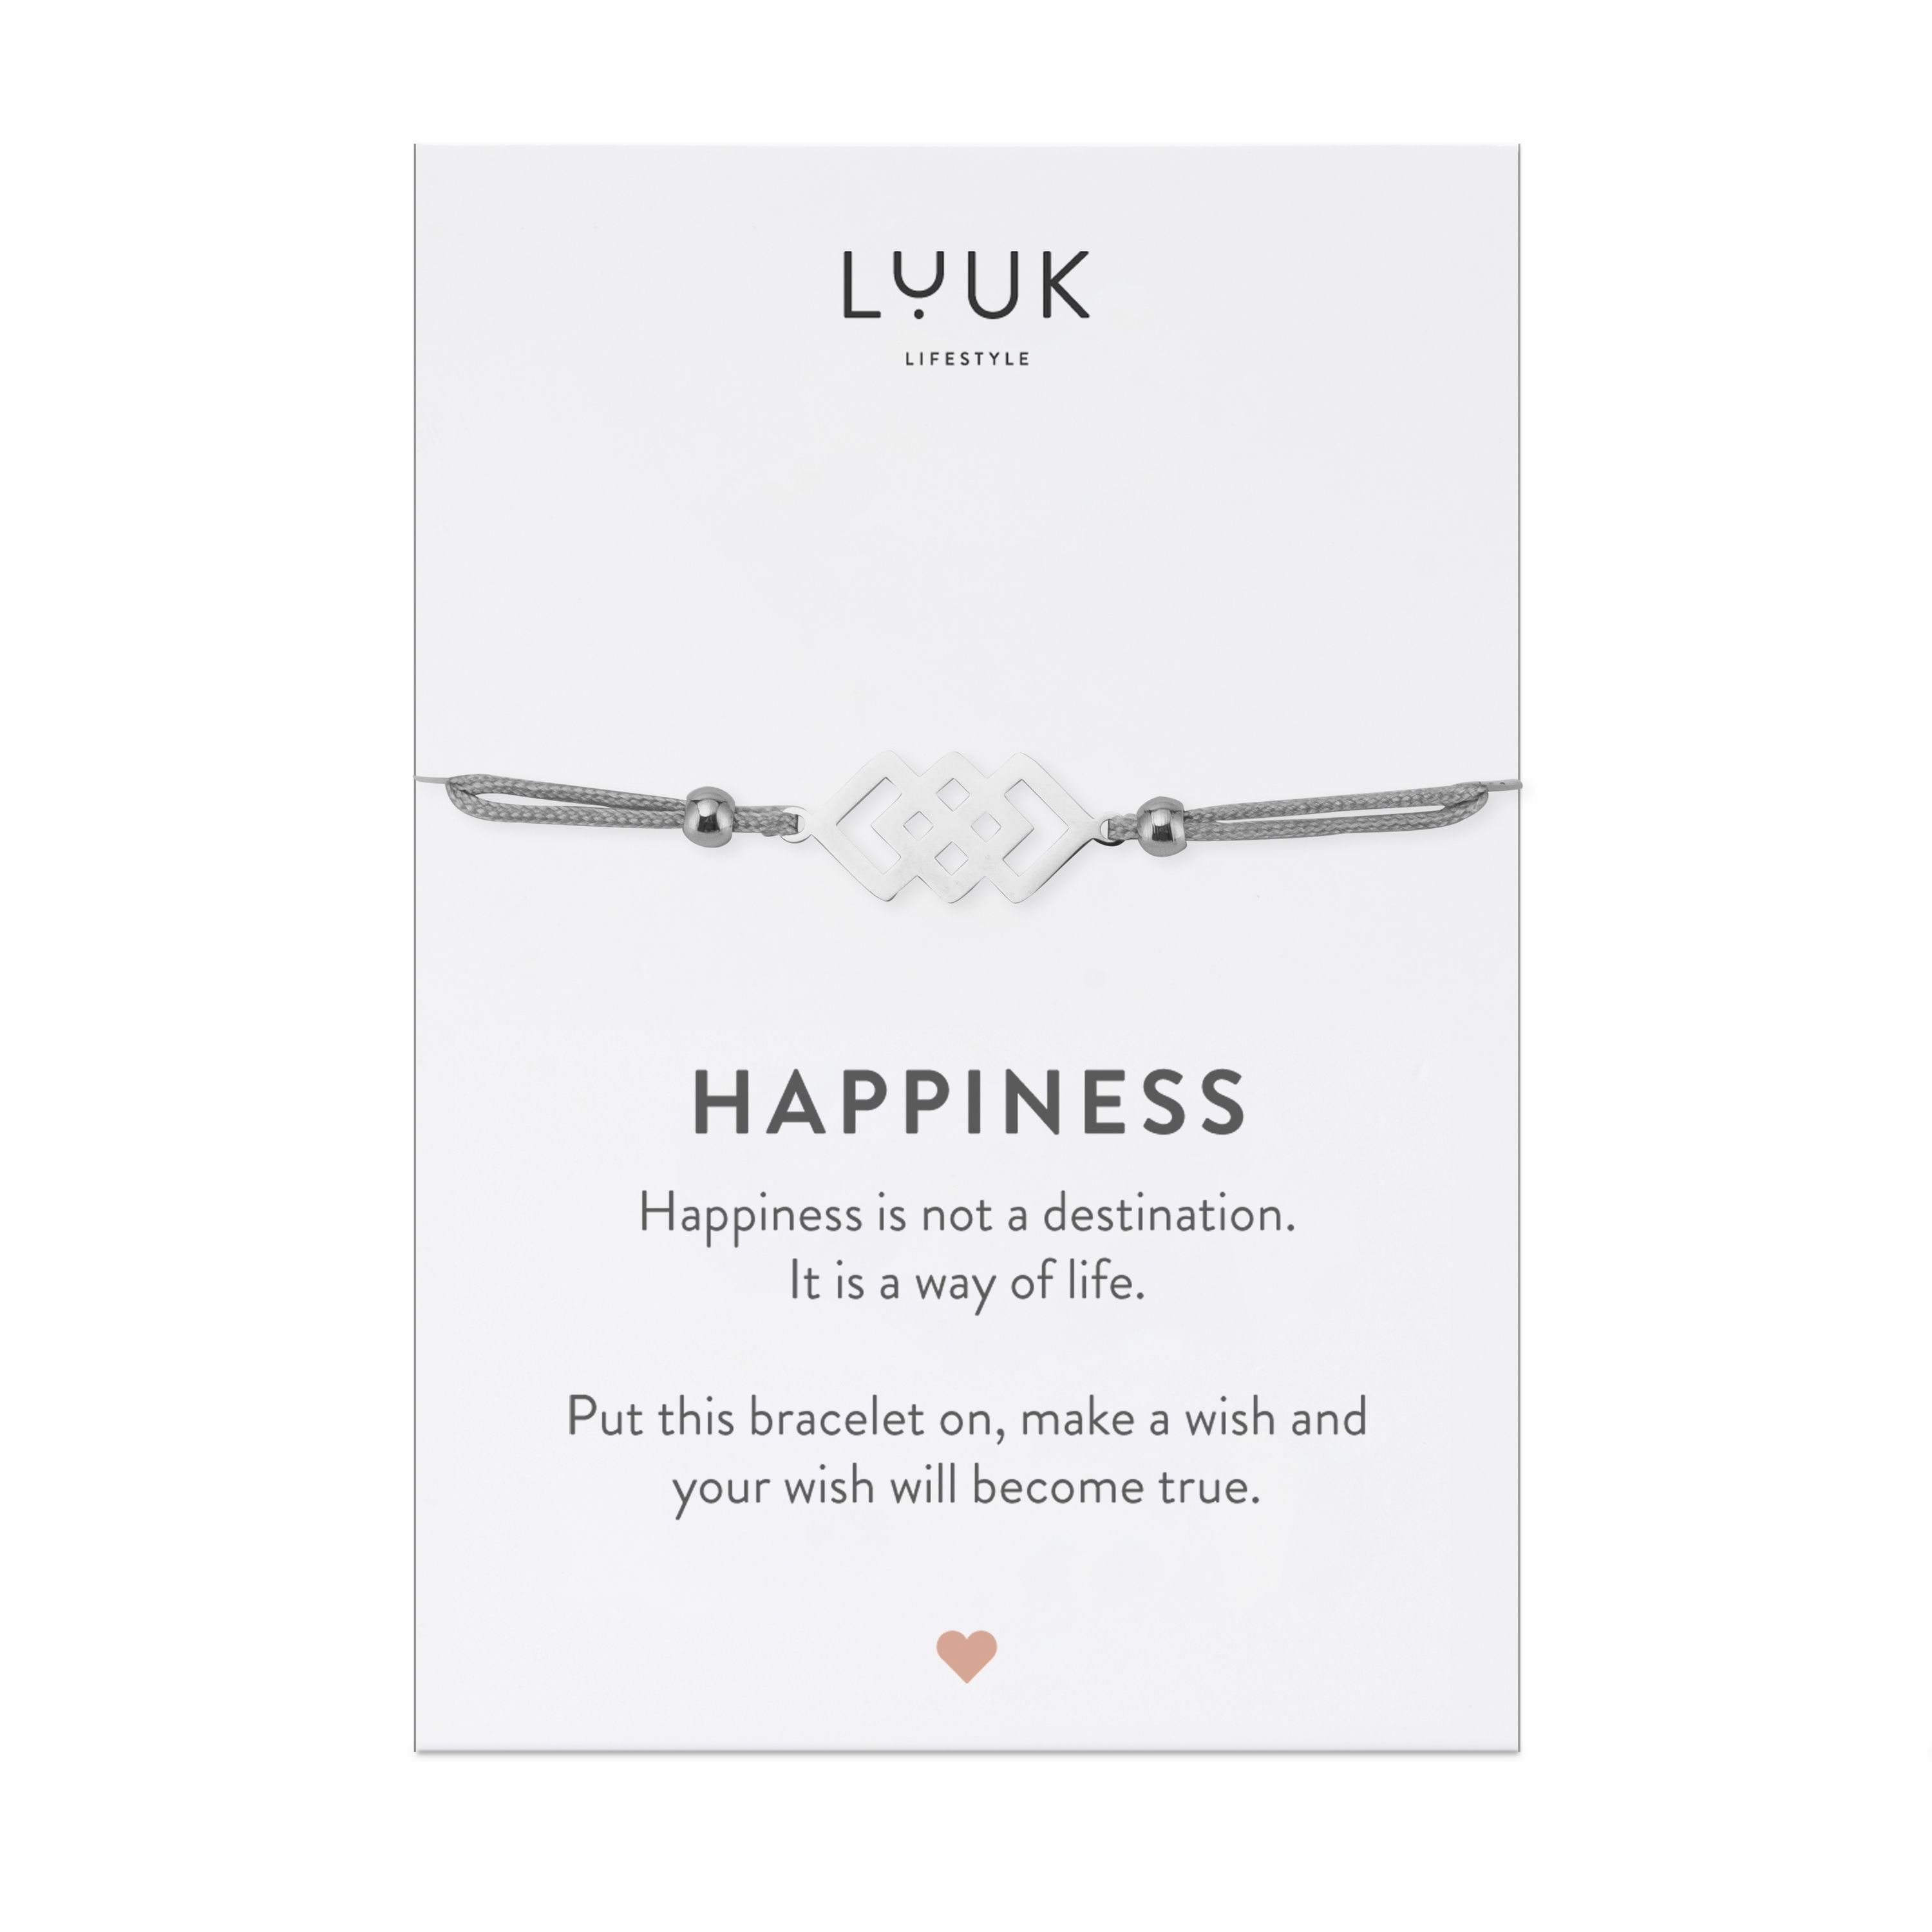 LUUK LIFESTYLE Freundschaftsarmband verschlungene Quadrate, handmade, mit Happiness Spruchkarte Silber